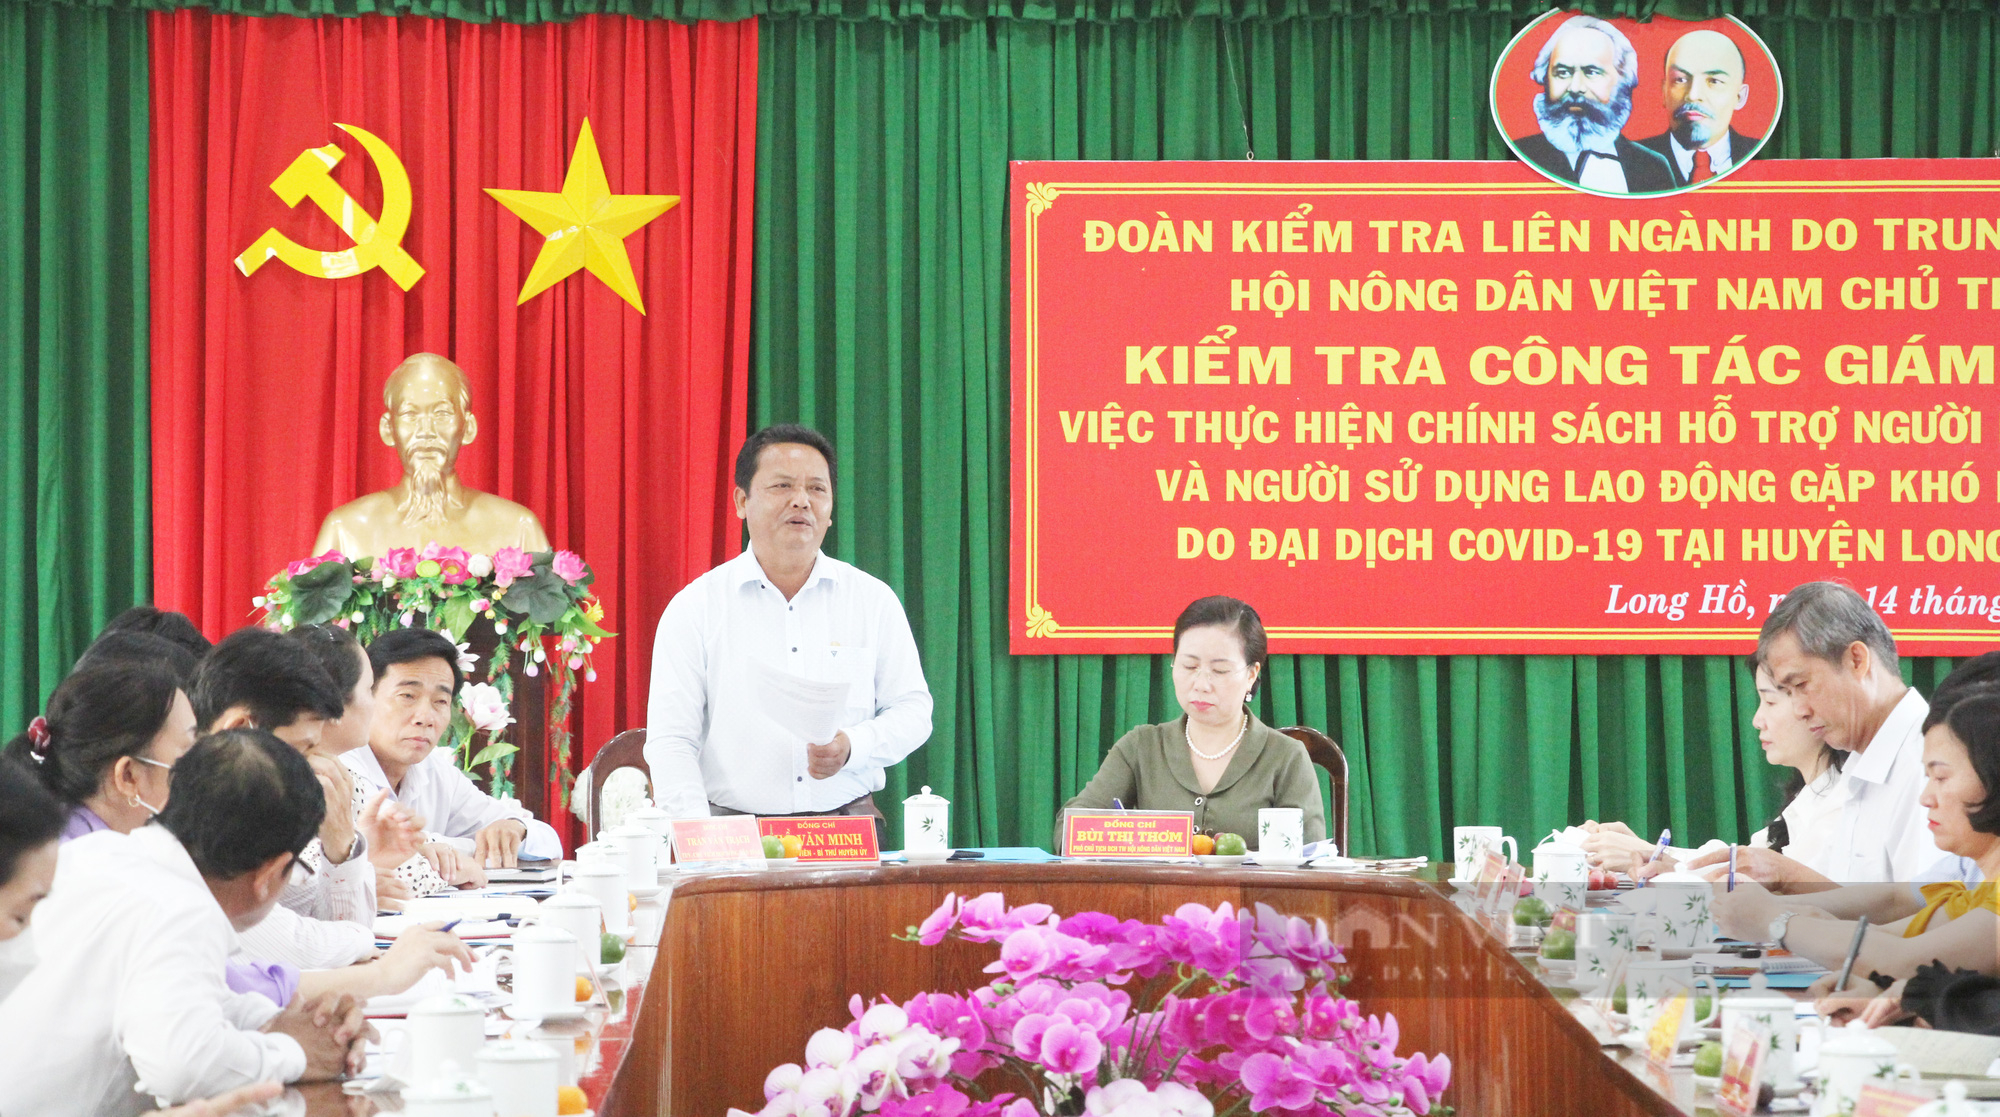 Phó Chủ tịch Hội NDVN Bùi Thị Thơm và đoàn công tác giám sát chính sách hỗ trợ do dịch Covid-19 tại Vĩnh Long - Ảnh 4.